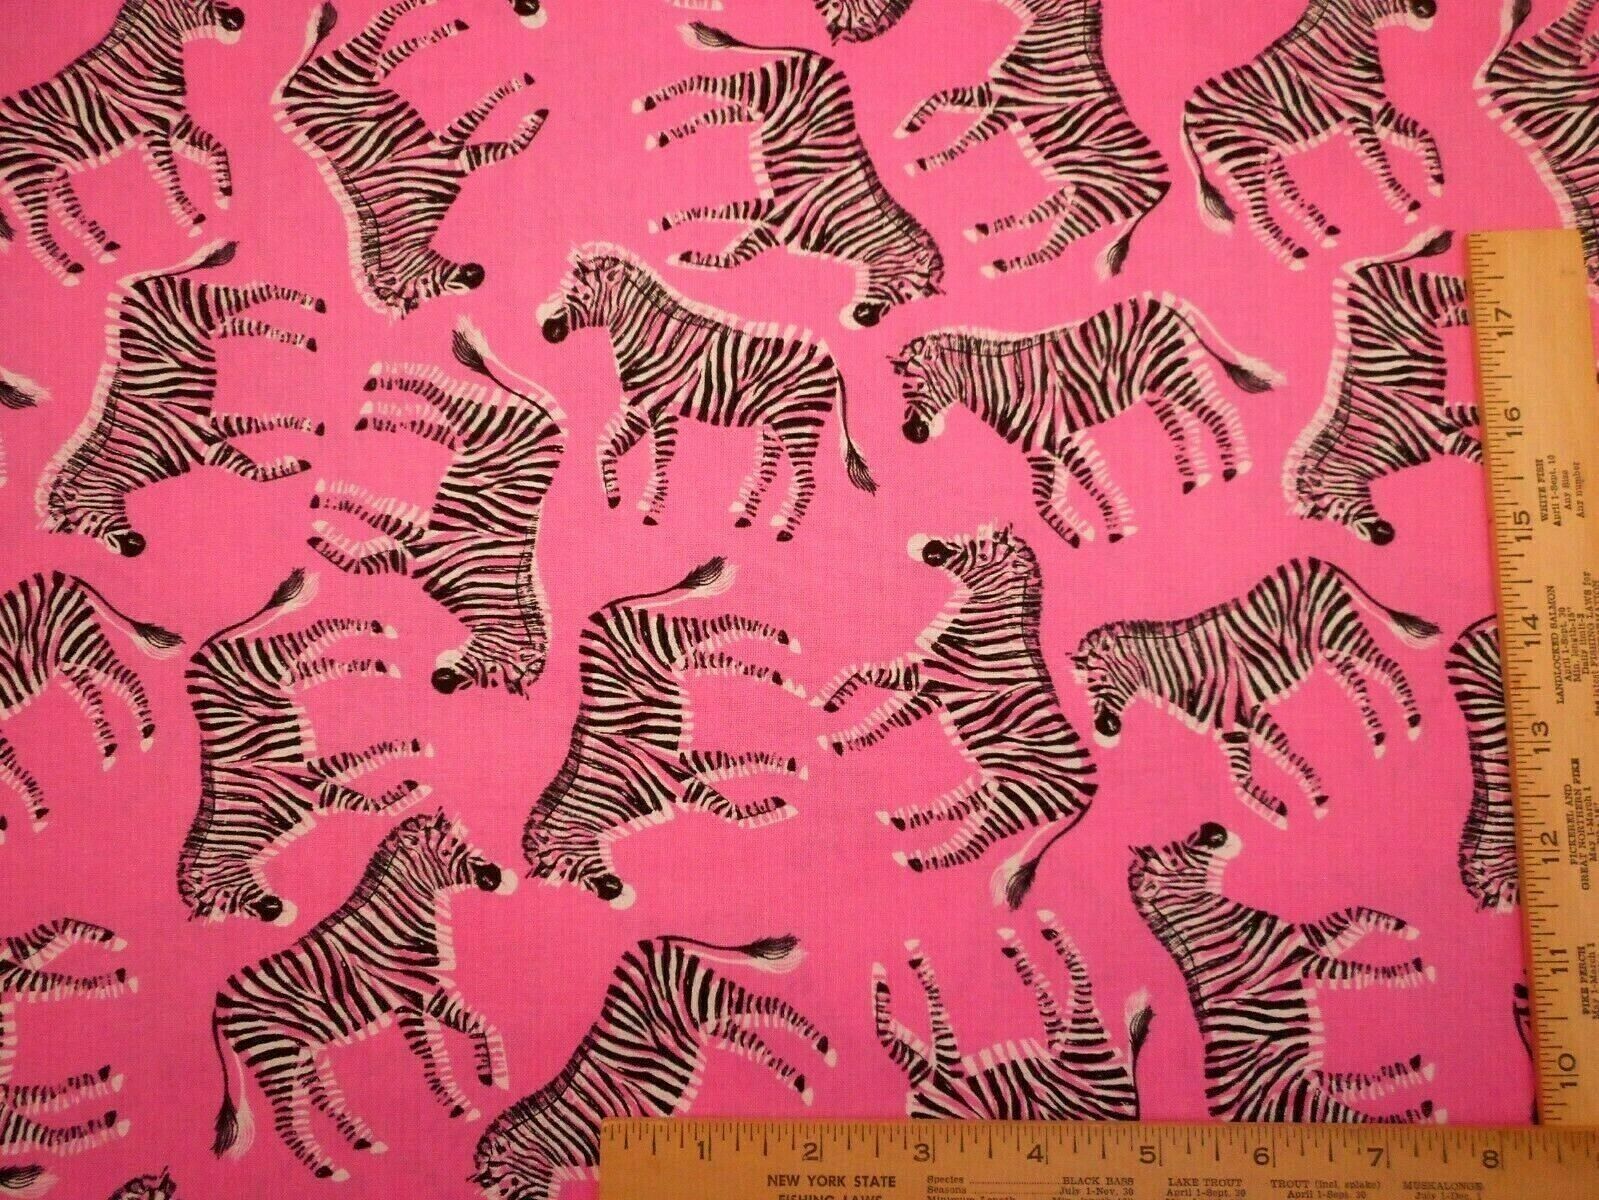 Quilt Fabric By Yard Black & White Zebras Animals on Pink Premium Cotton  Nov #B | eBay